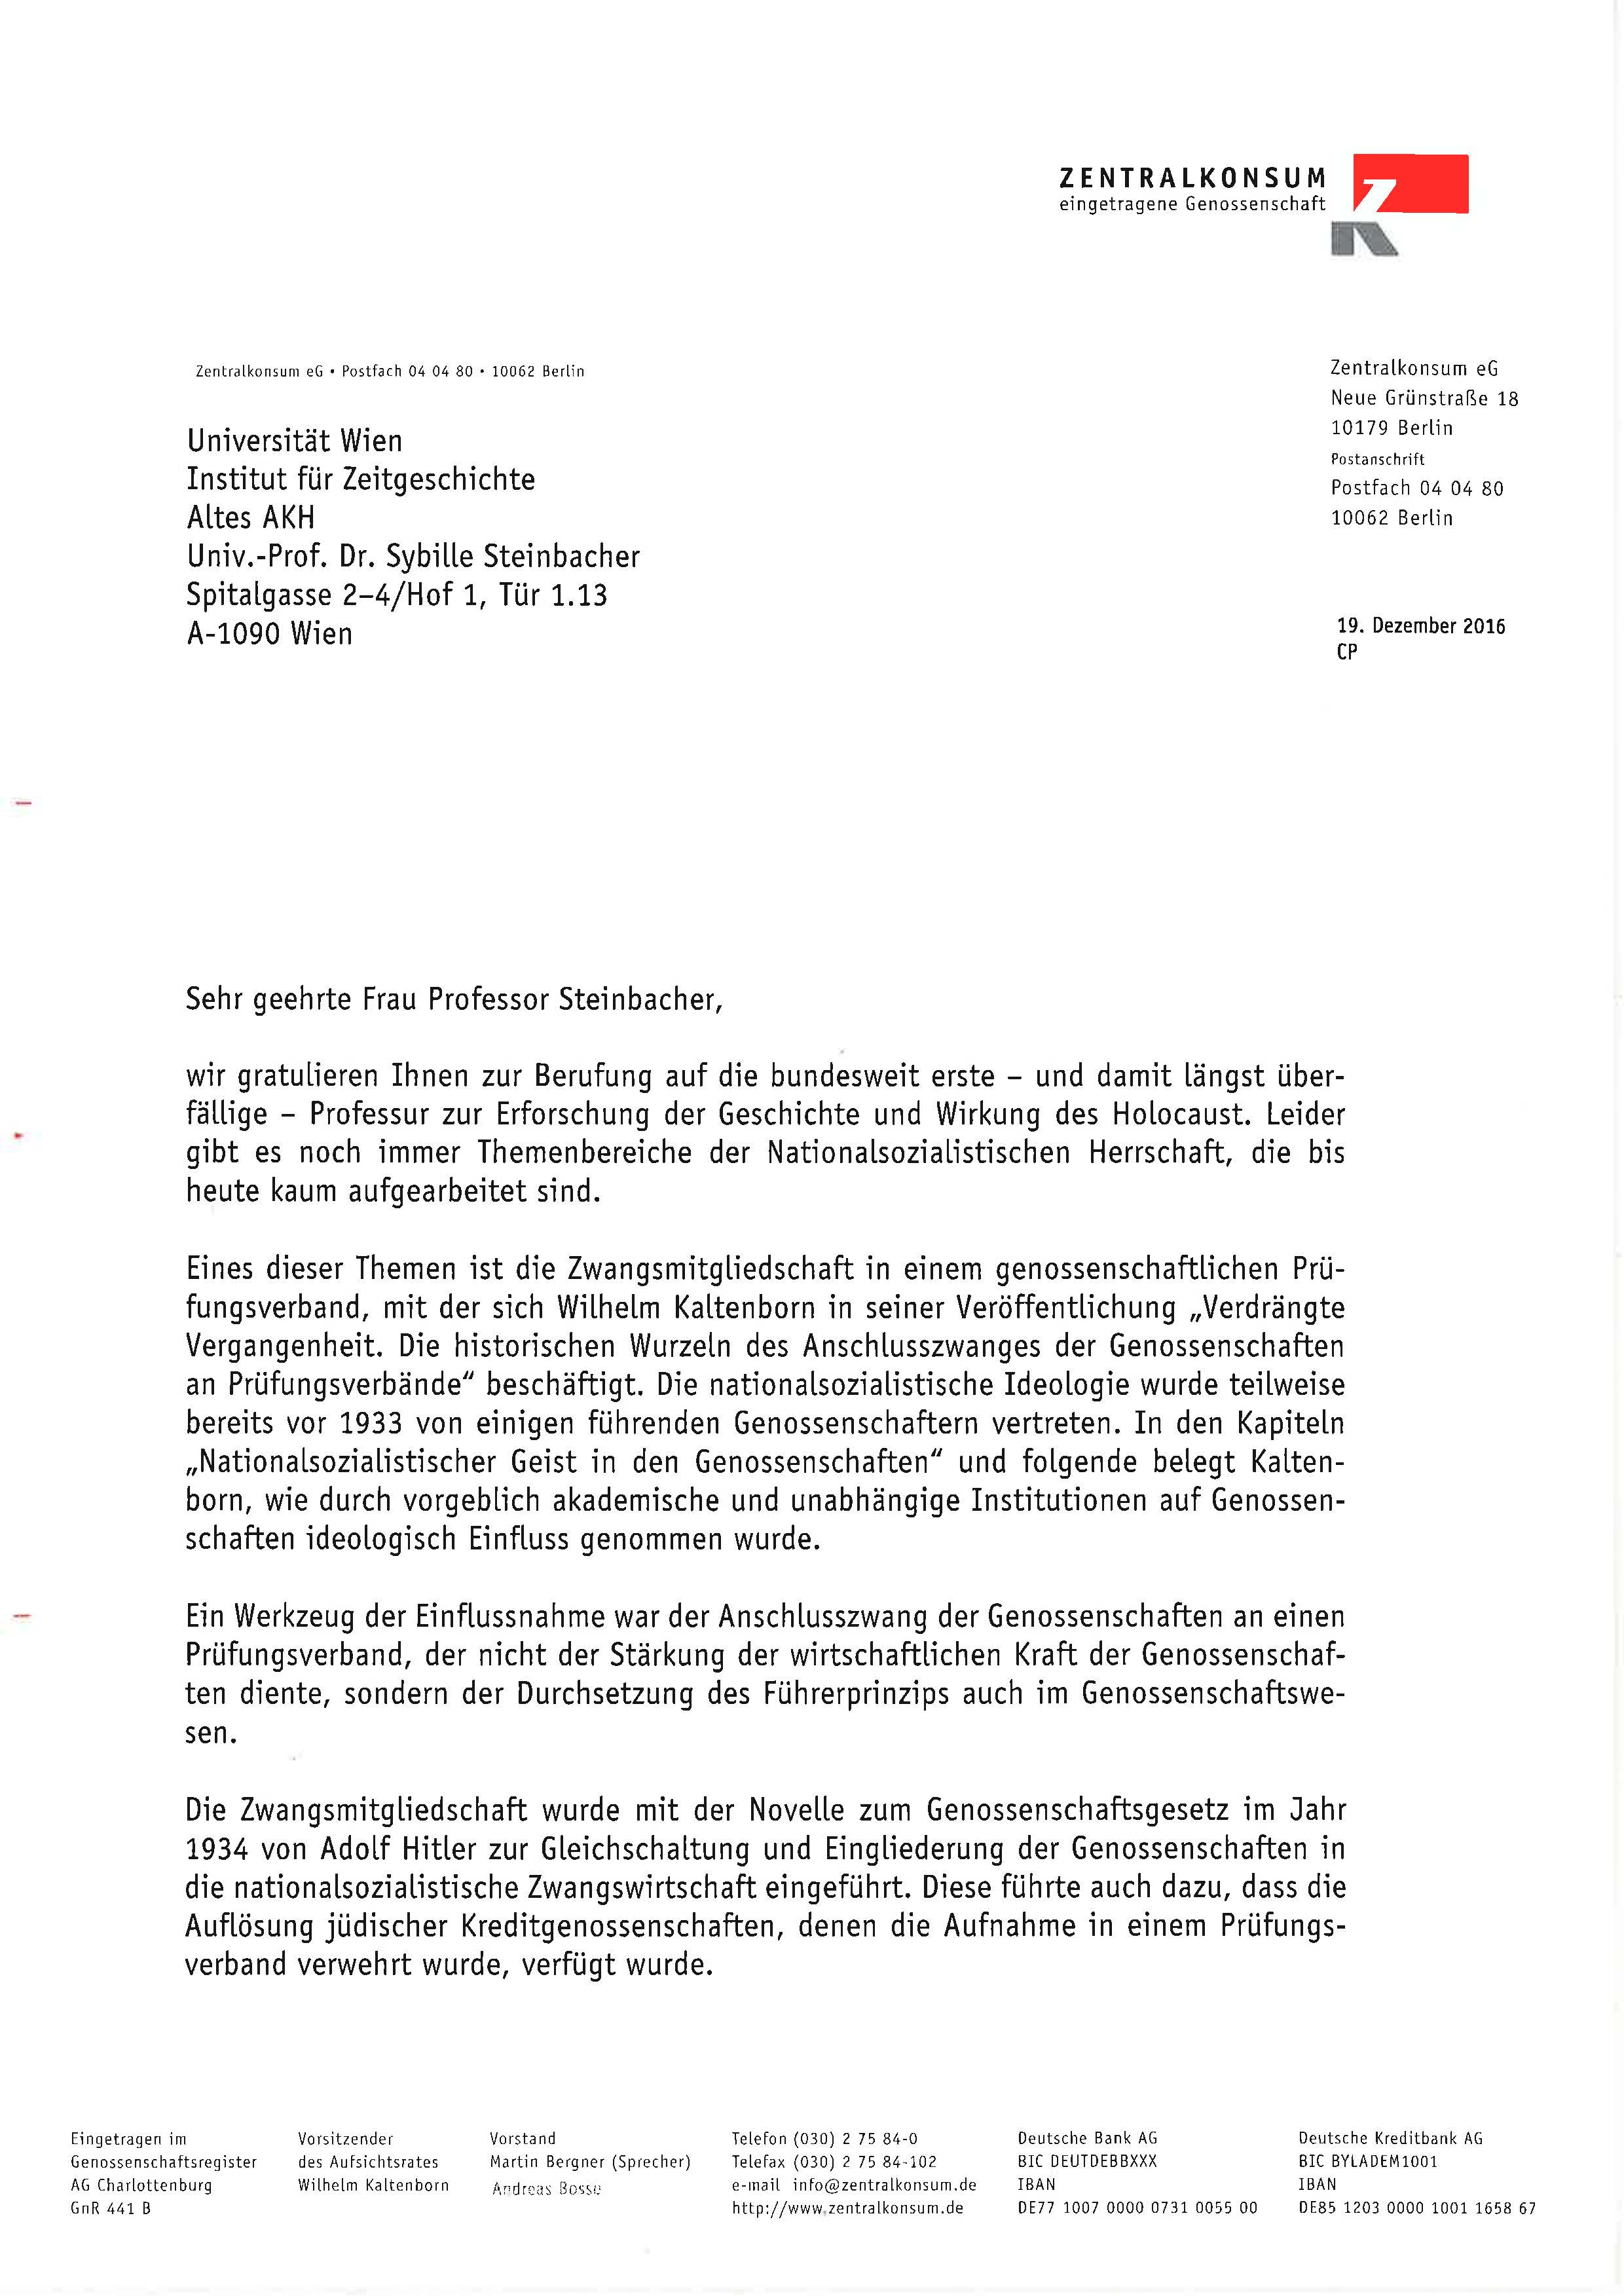 Anschreiben Prof. Steinbacher anlässlich Berufung auf den Holocaust-Lehrstuhl